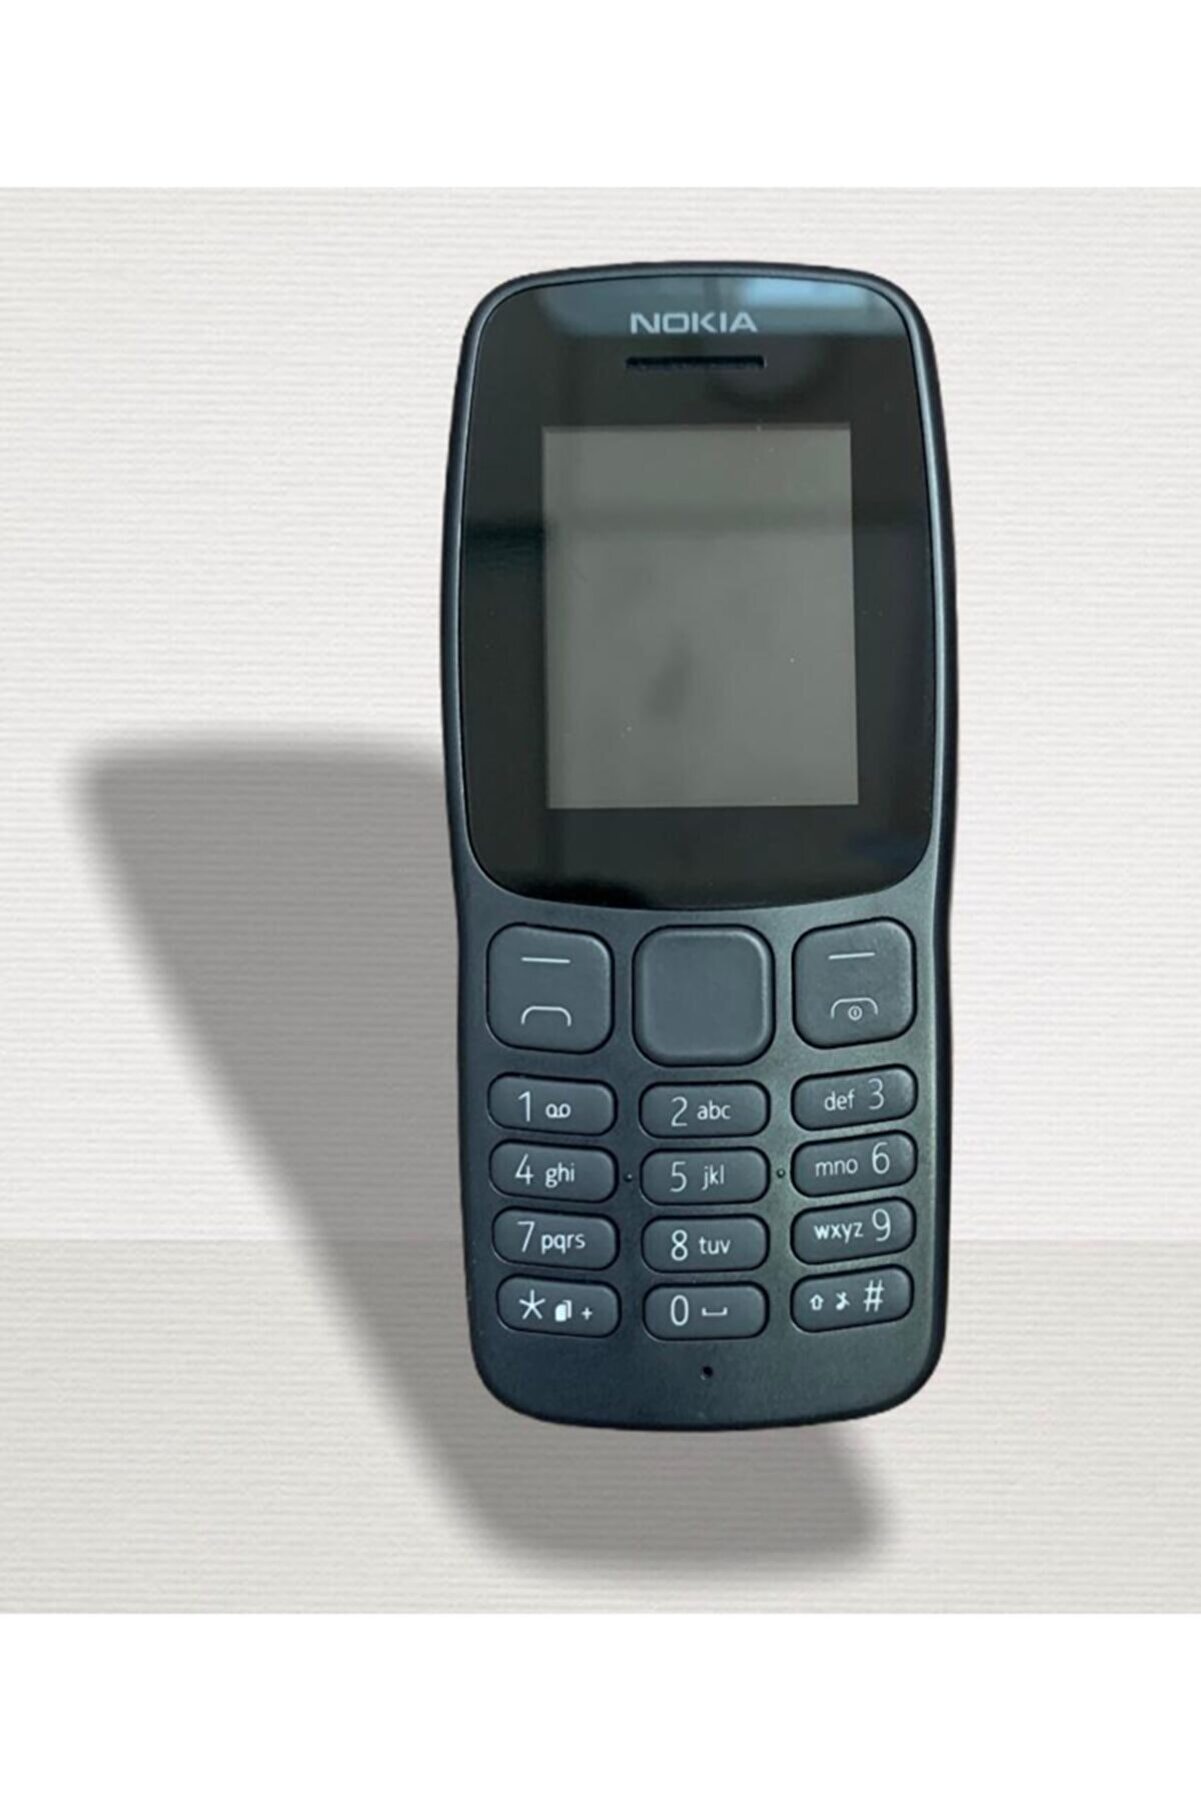 Nokia Tuşlu Çift Hatlı Kamerasız Asker Telefonu